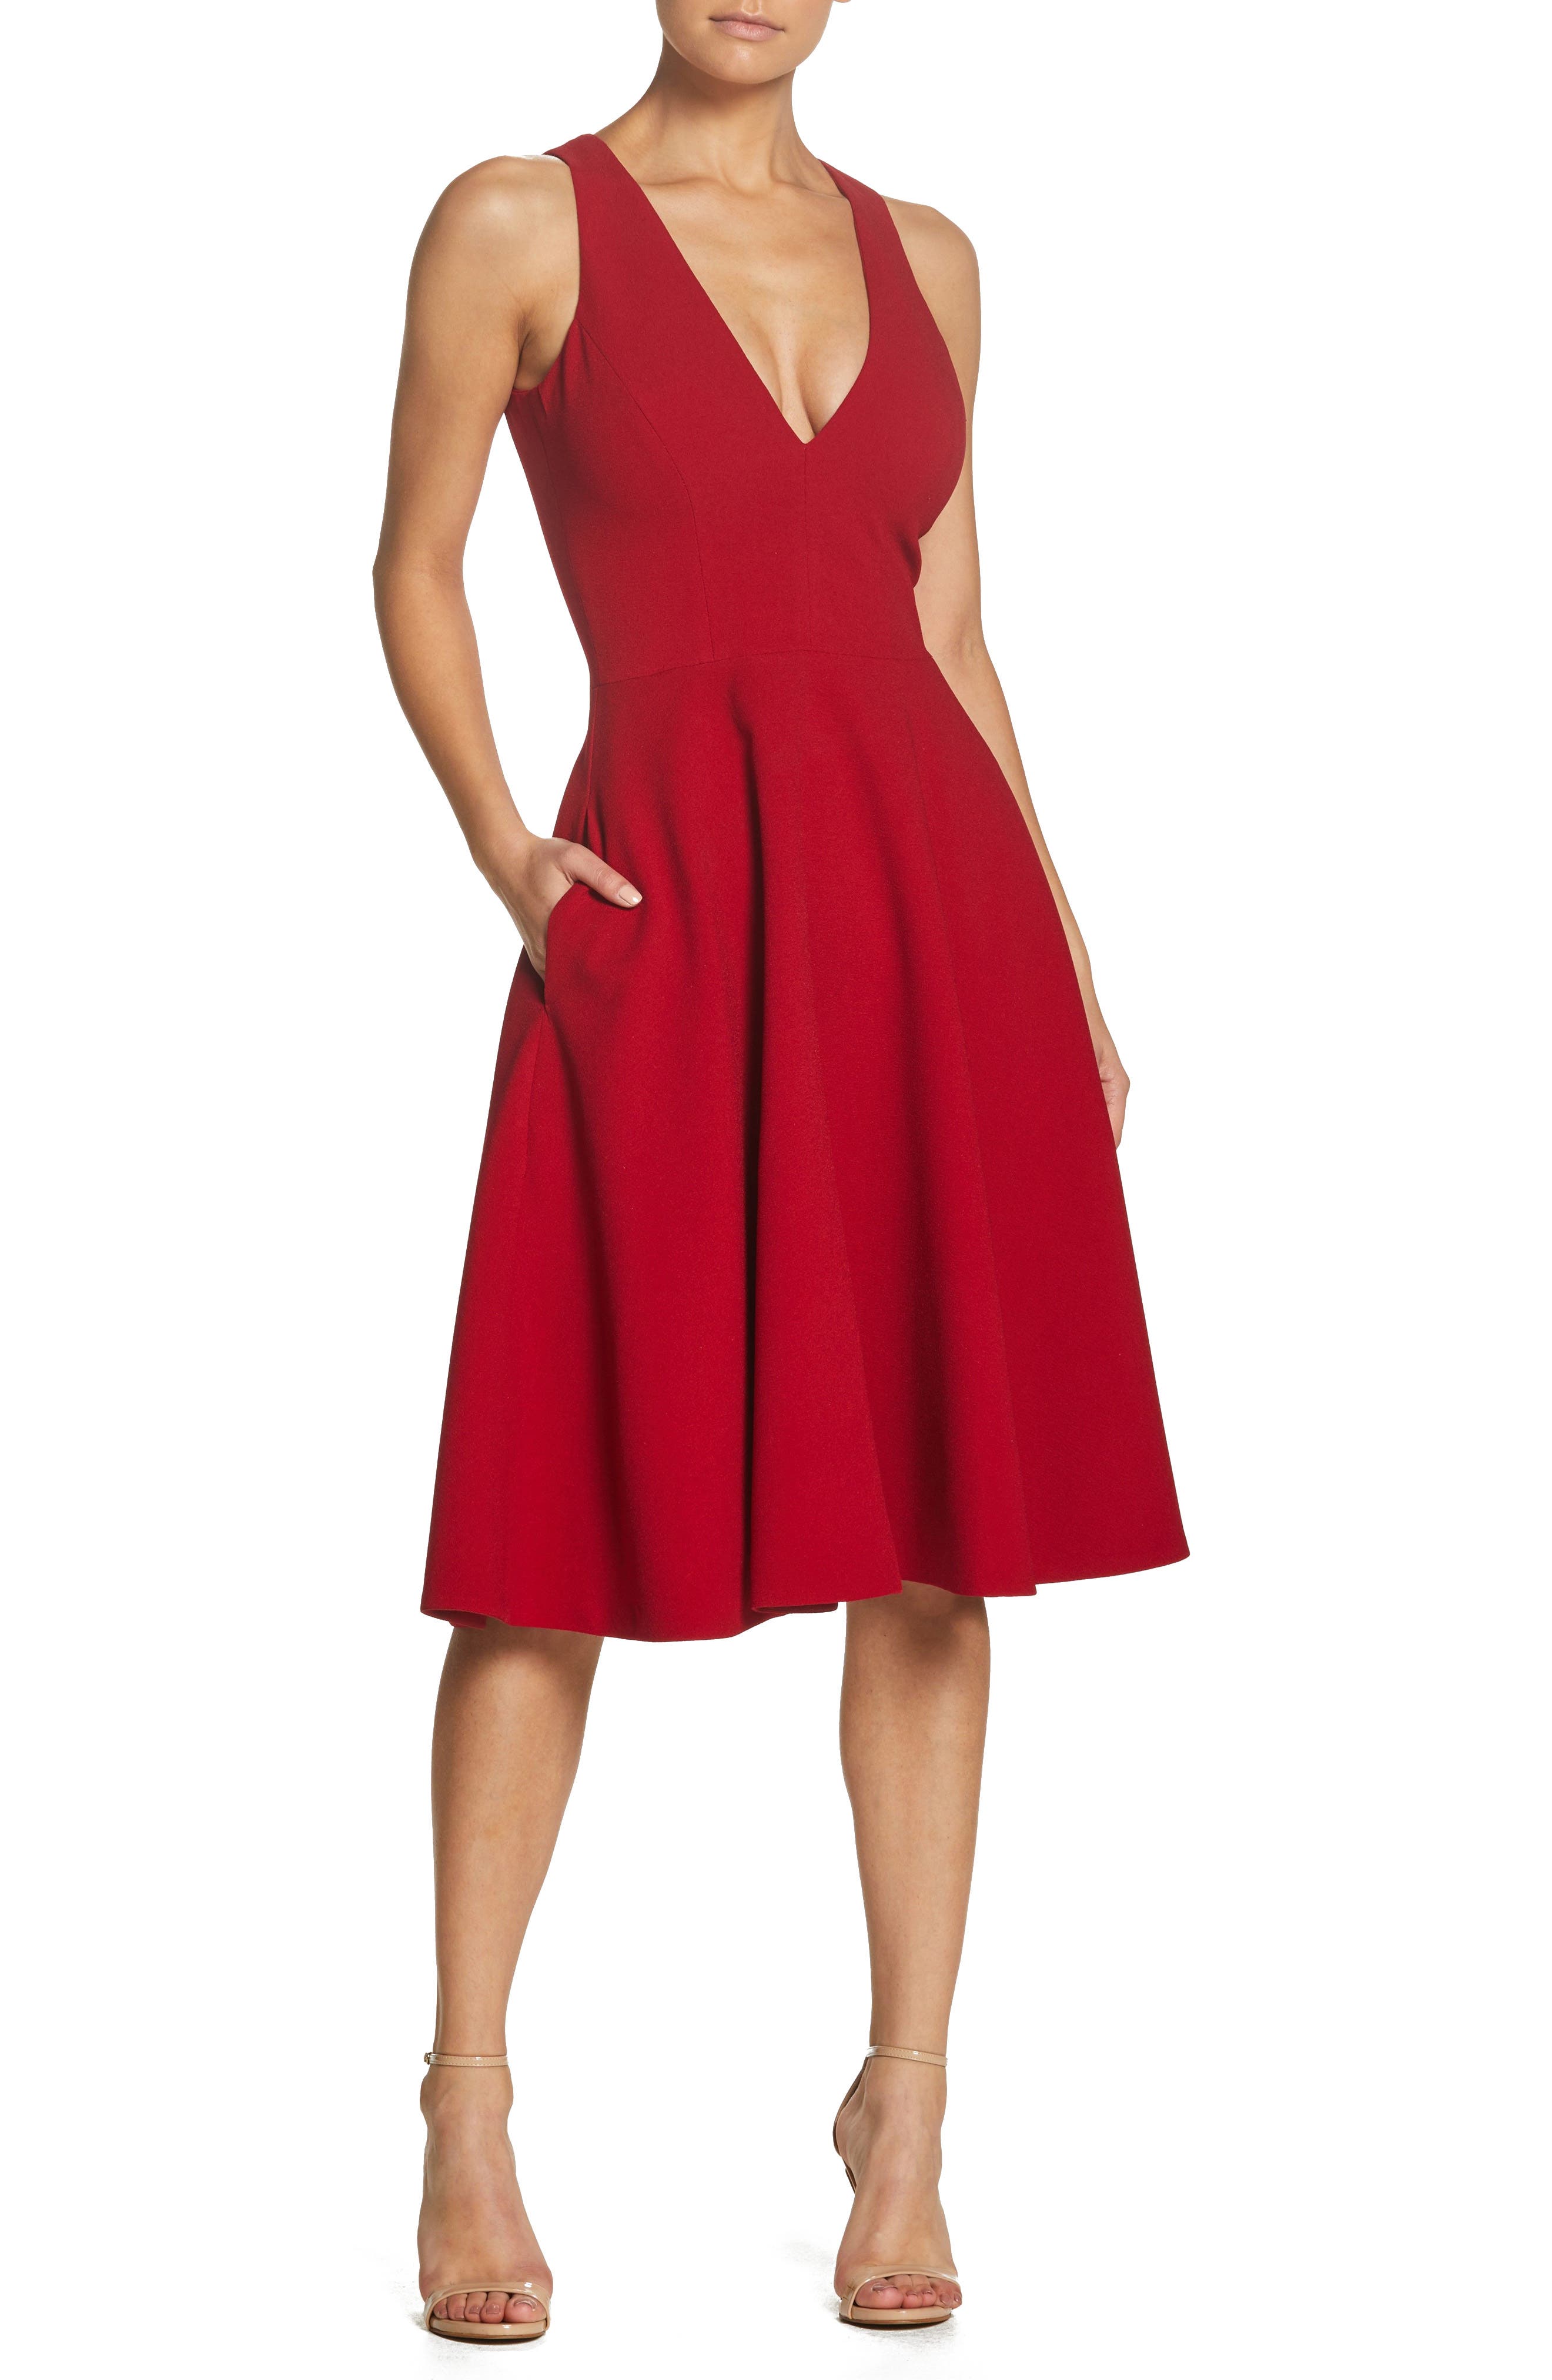 women red dress